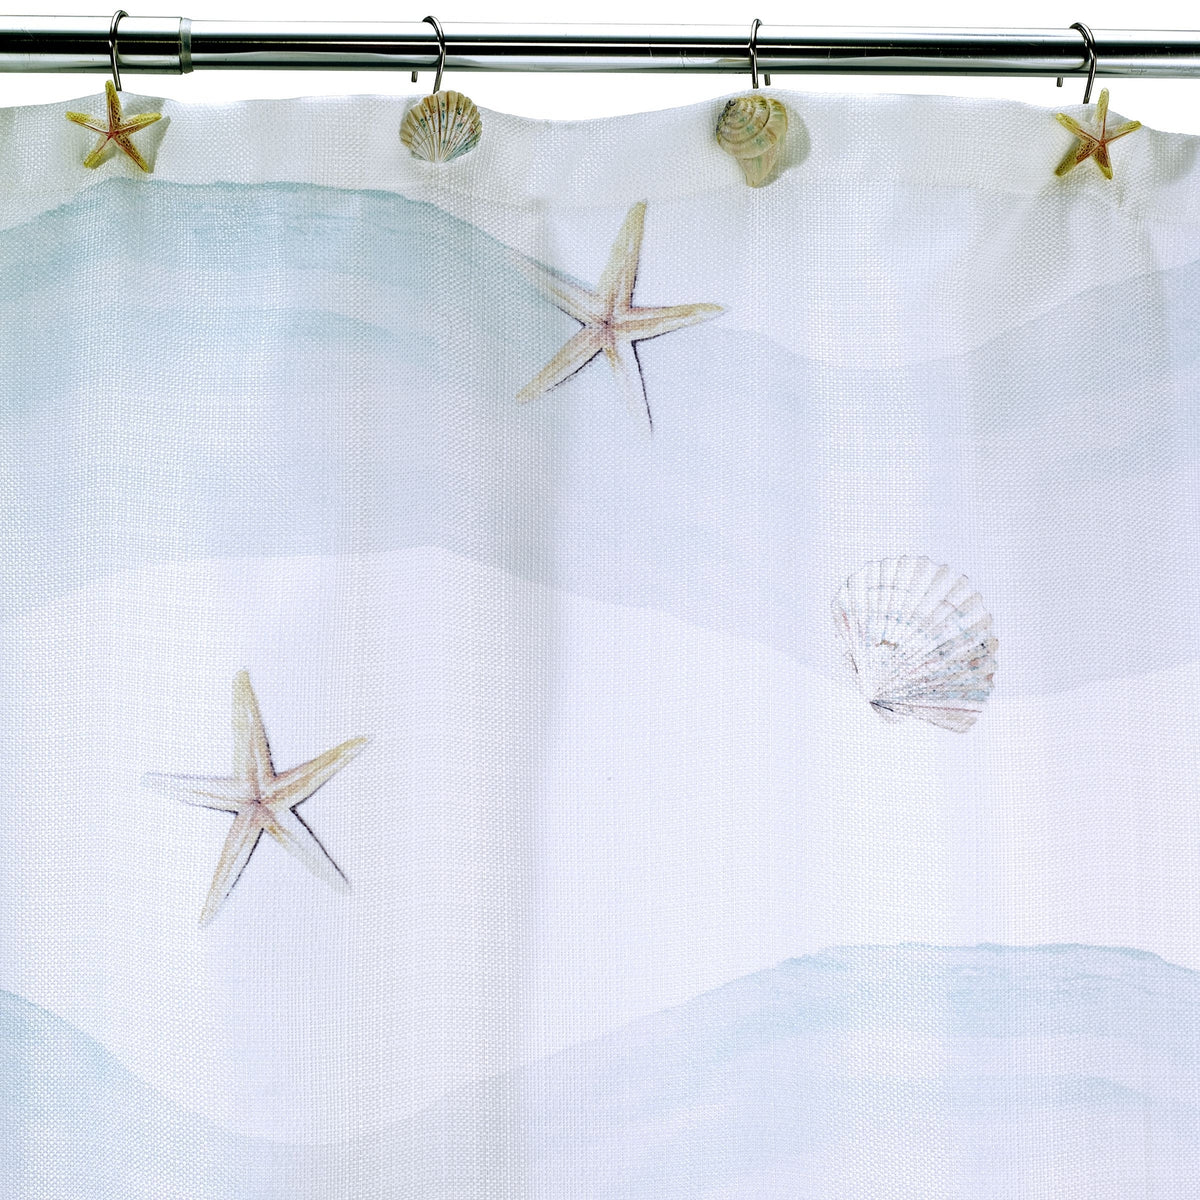 Avanti Linens Coastal Terrazzo Shower Curtain Multicolor 